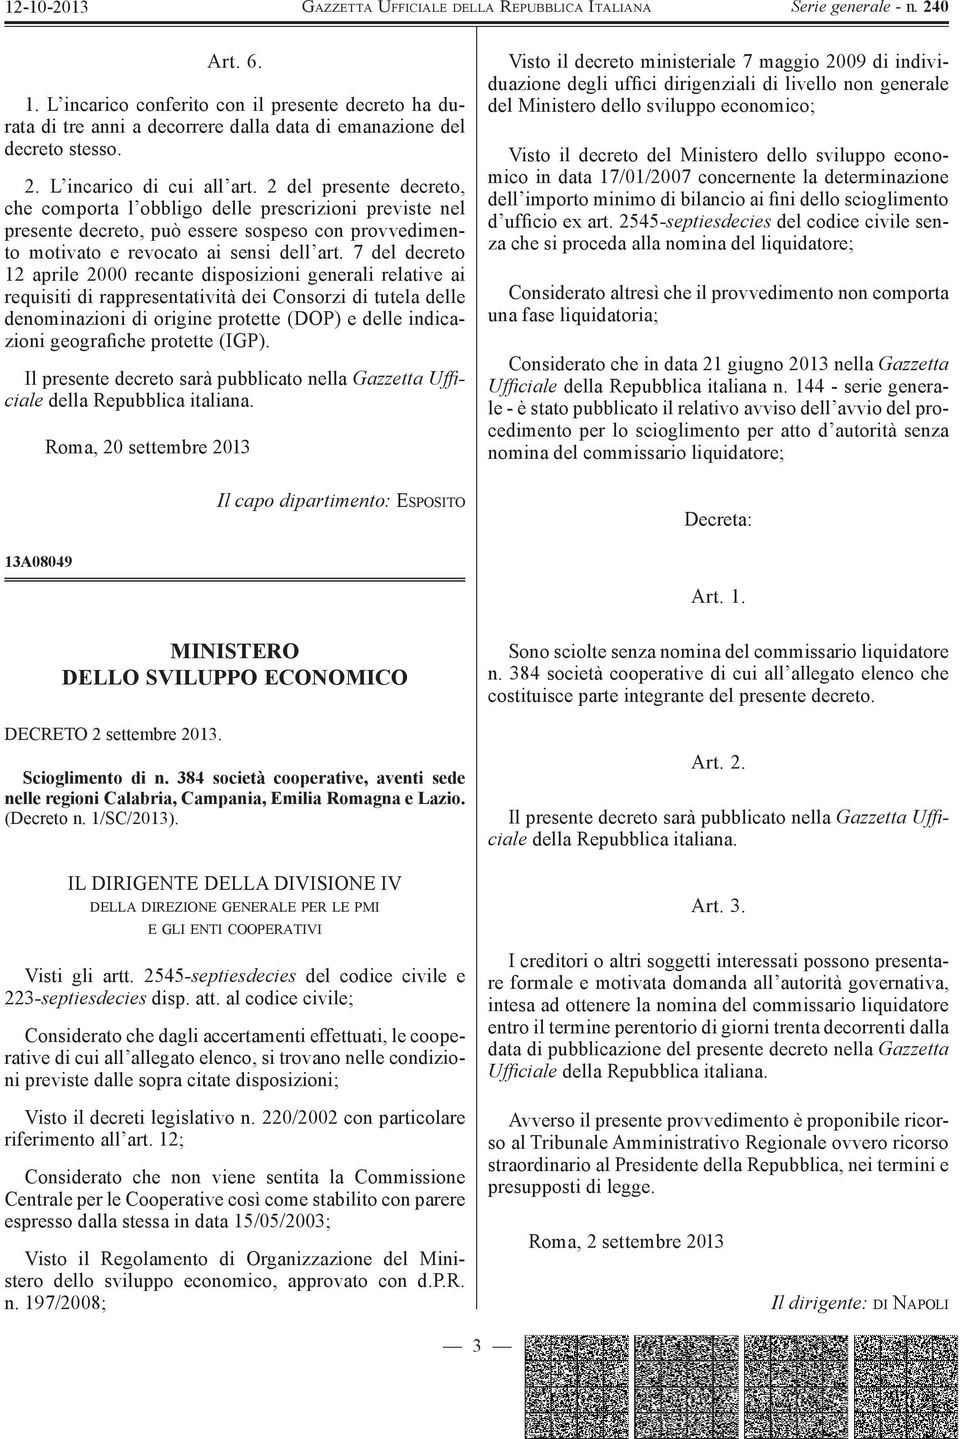 7 del decreto 12 aprile 2000 recante disposizioni generali relative ai requisiti di rappresentatività dei Consorzi di tutela delle denominazioni di origine protette (DOP) e delle indicazioni